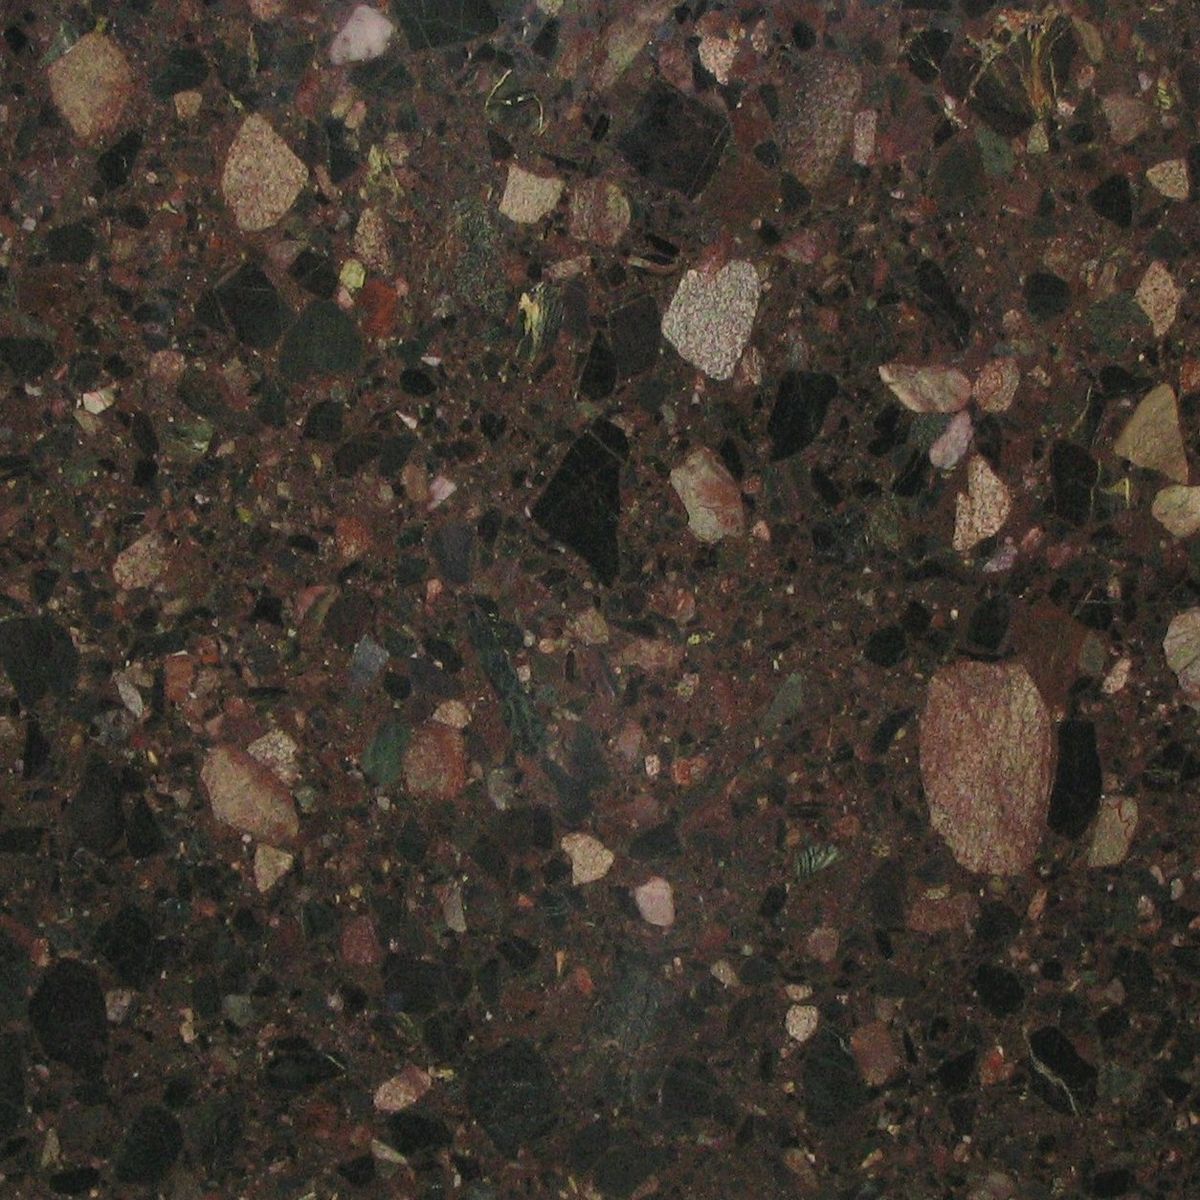 palladio granites